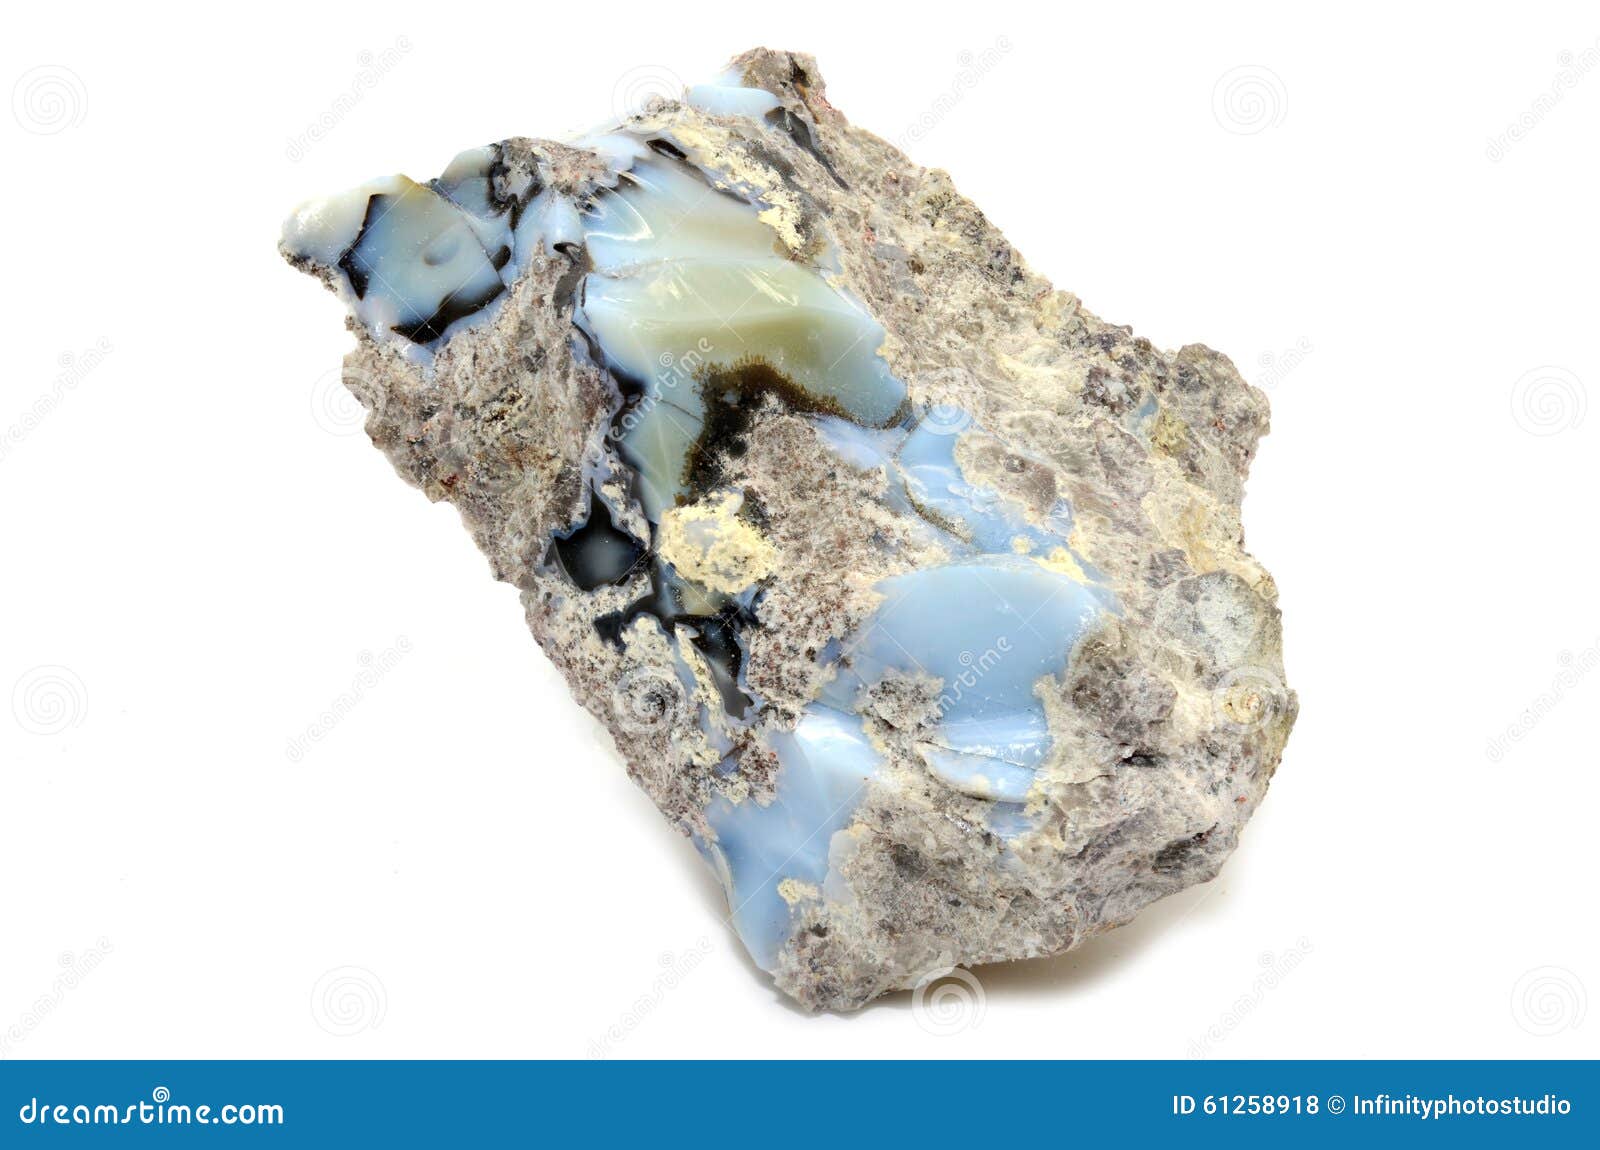 blue opal specimen  on white